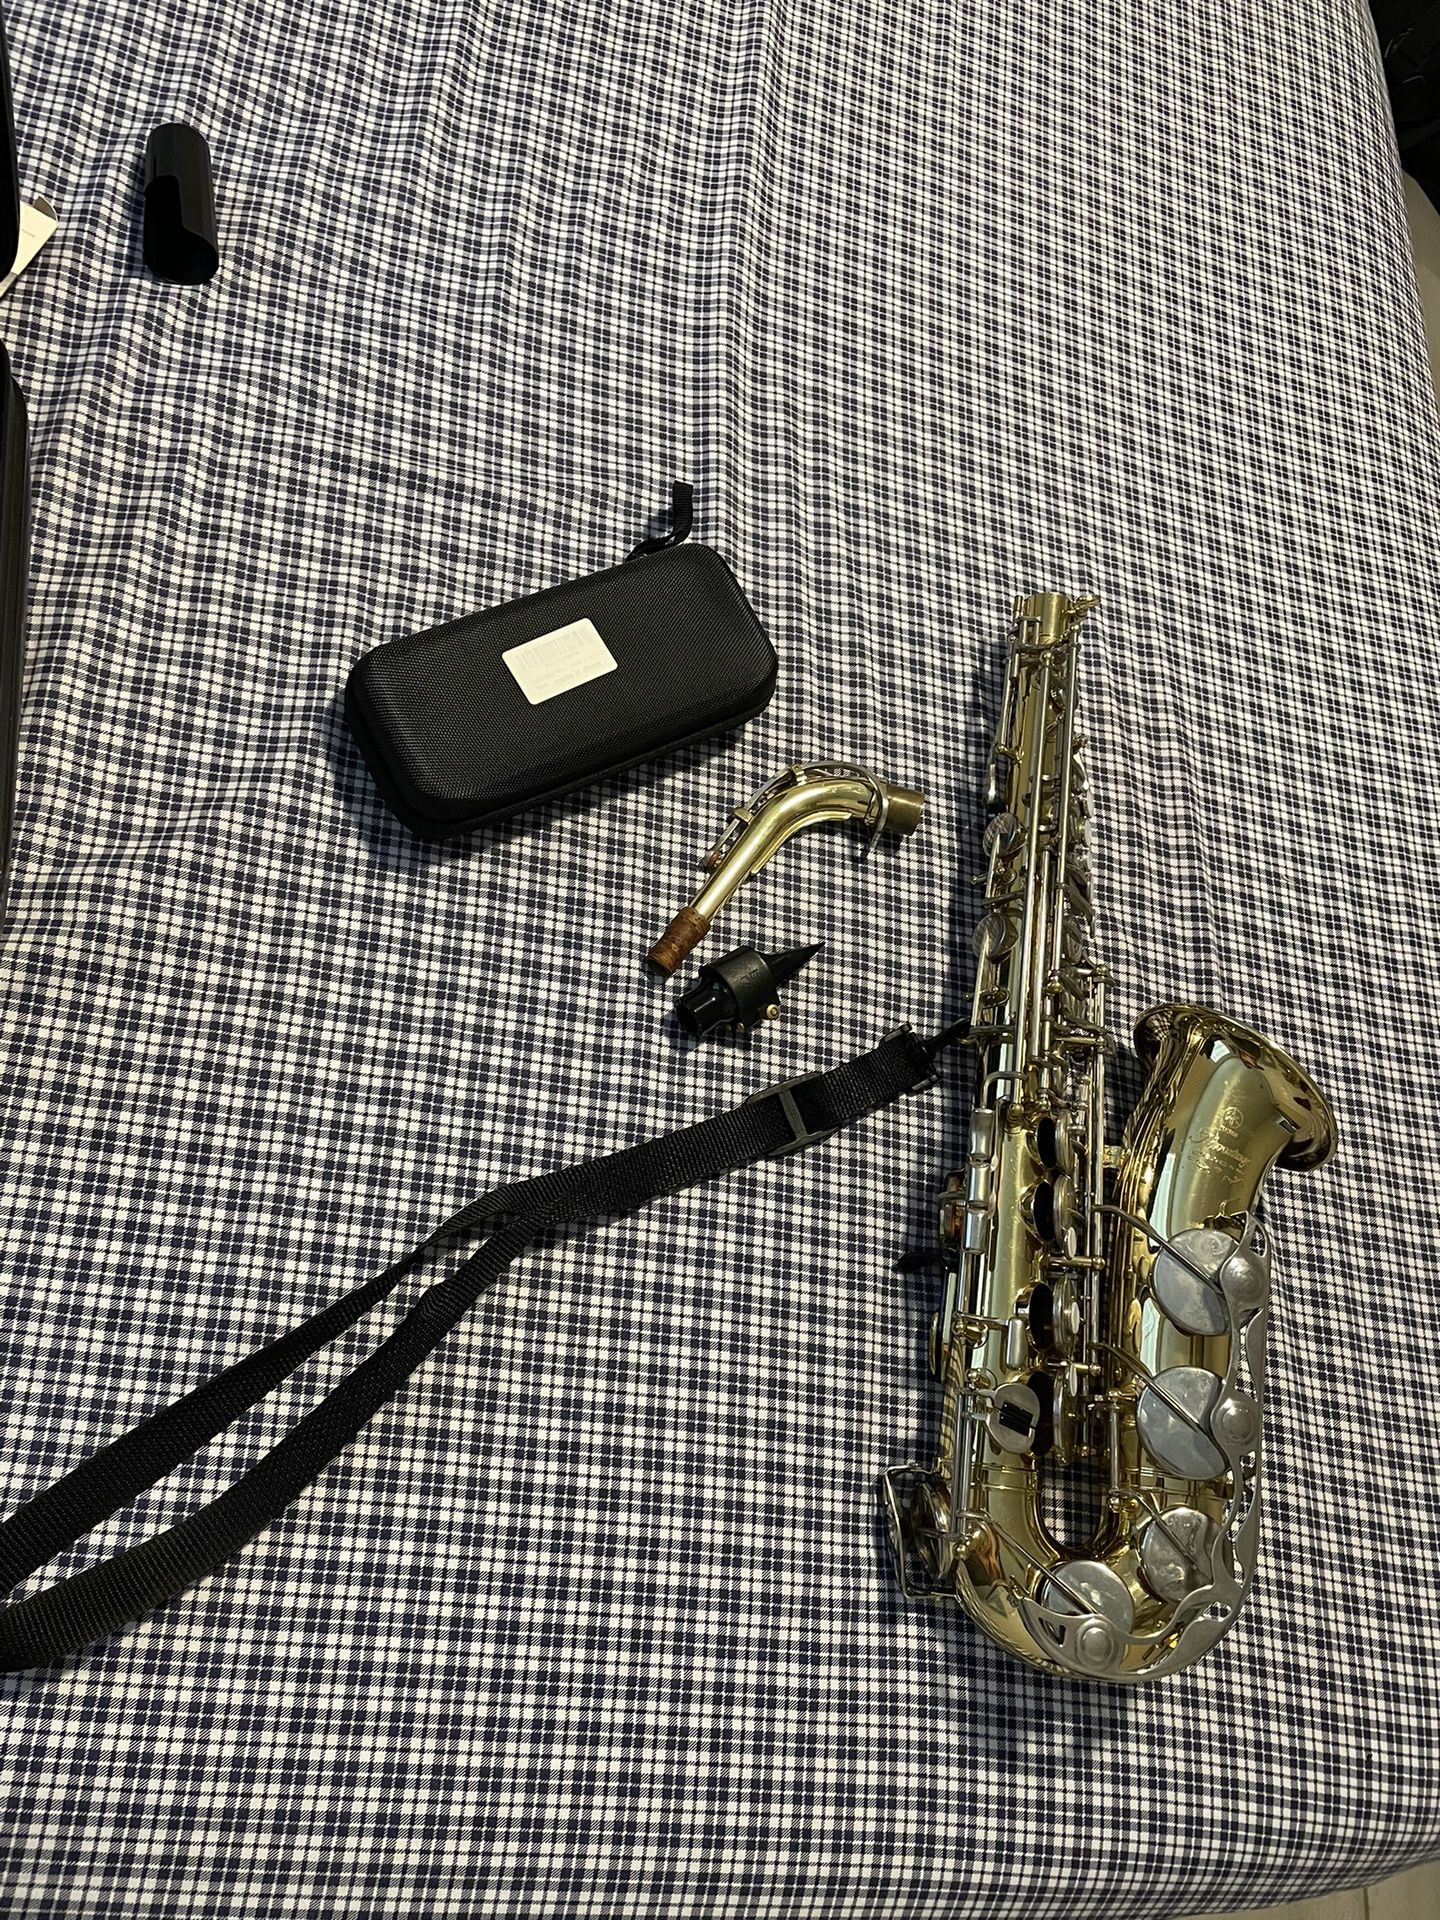 Amazing Yamaha Advantage Beginner Alto Saxophone 